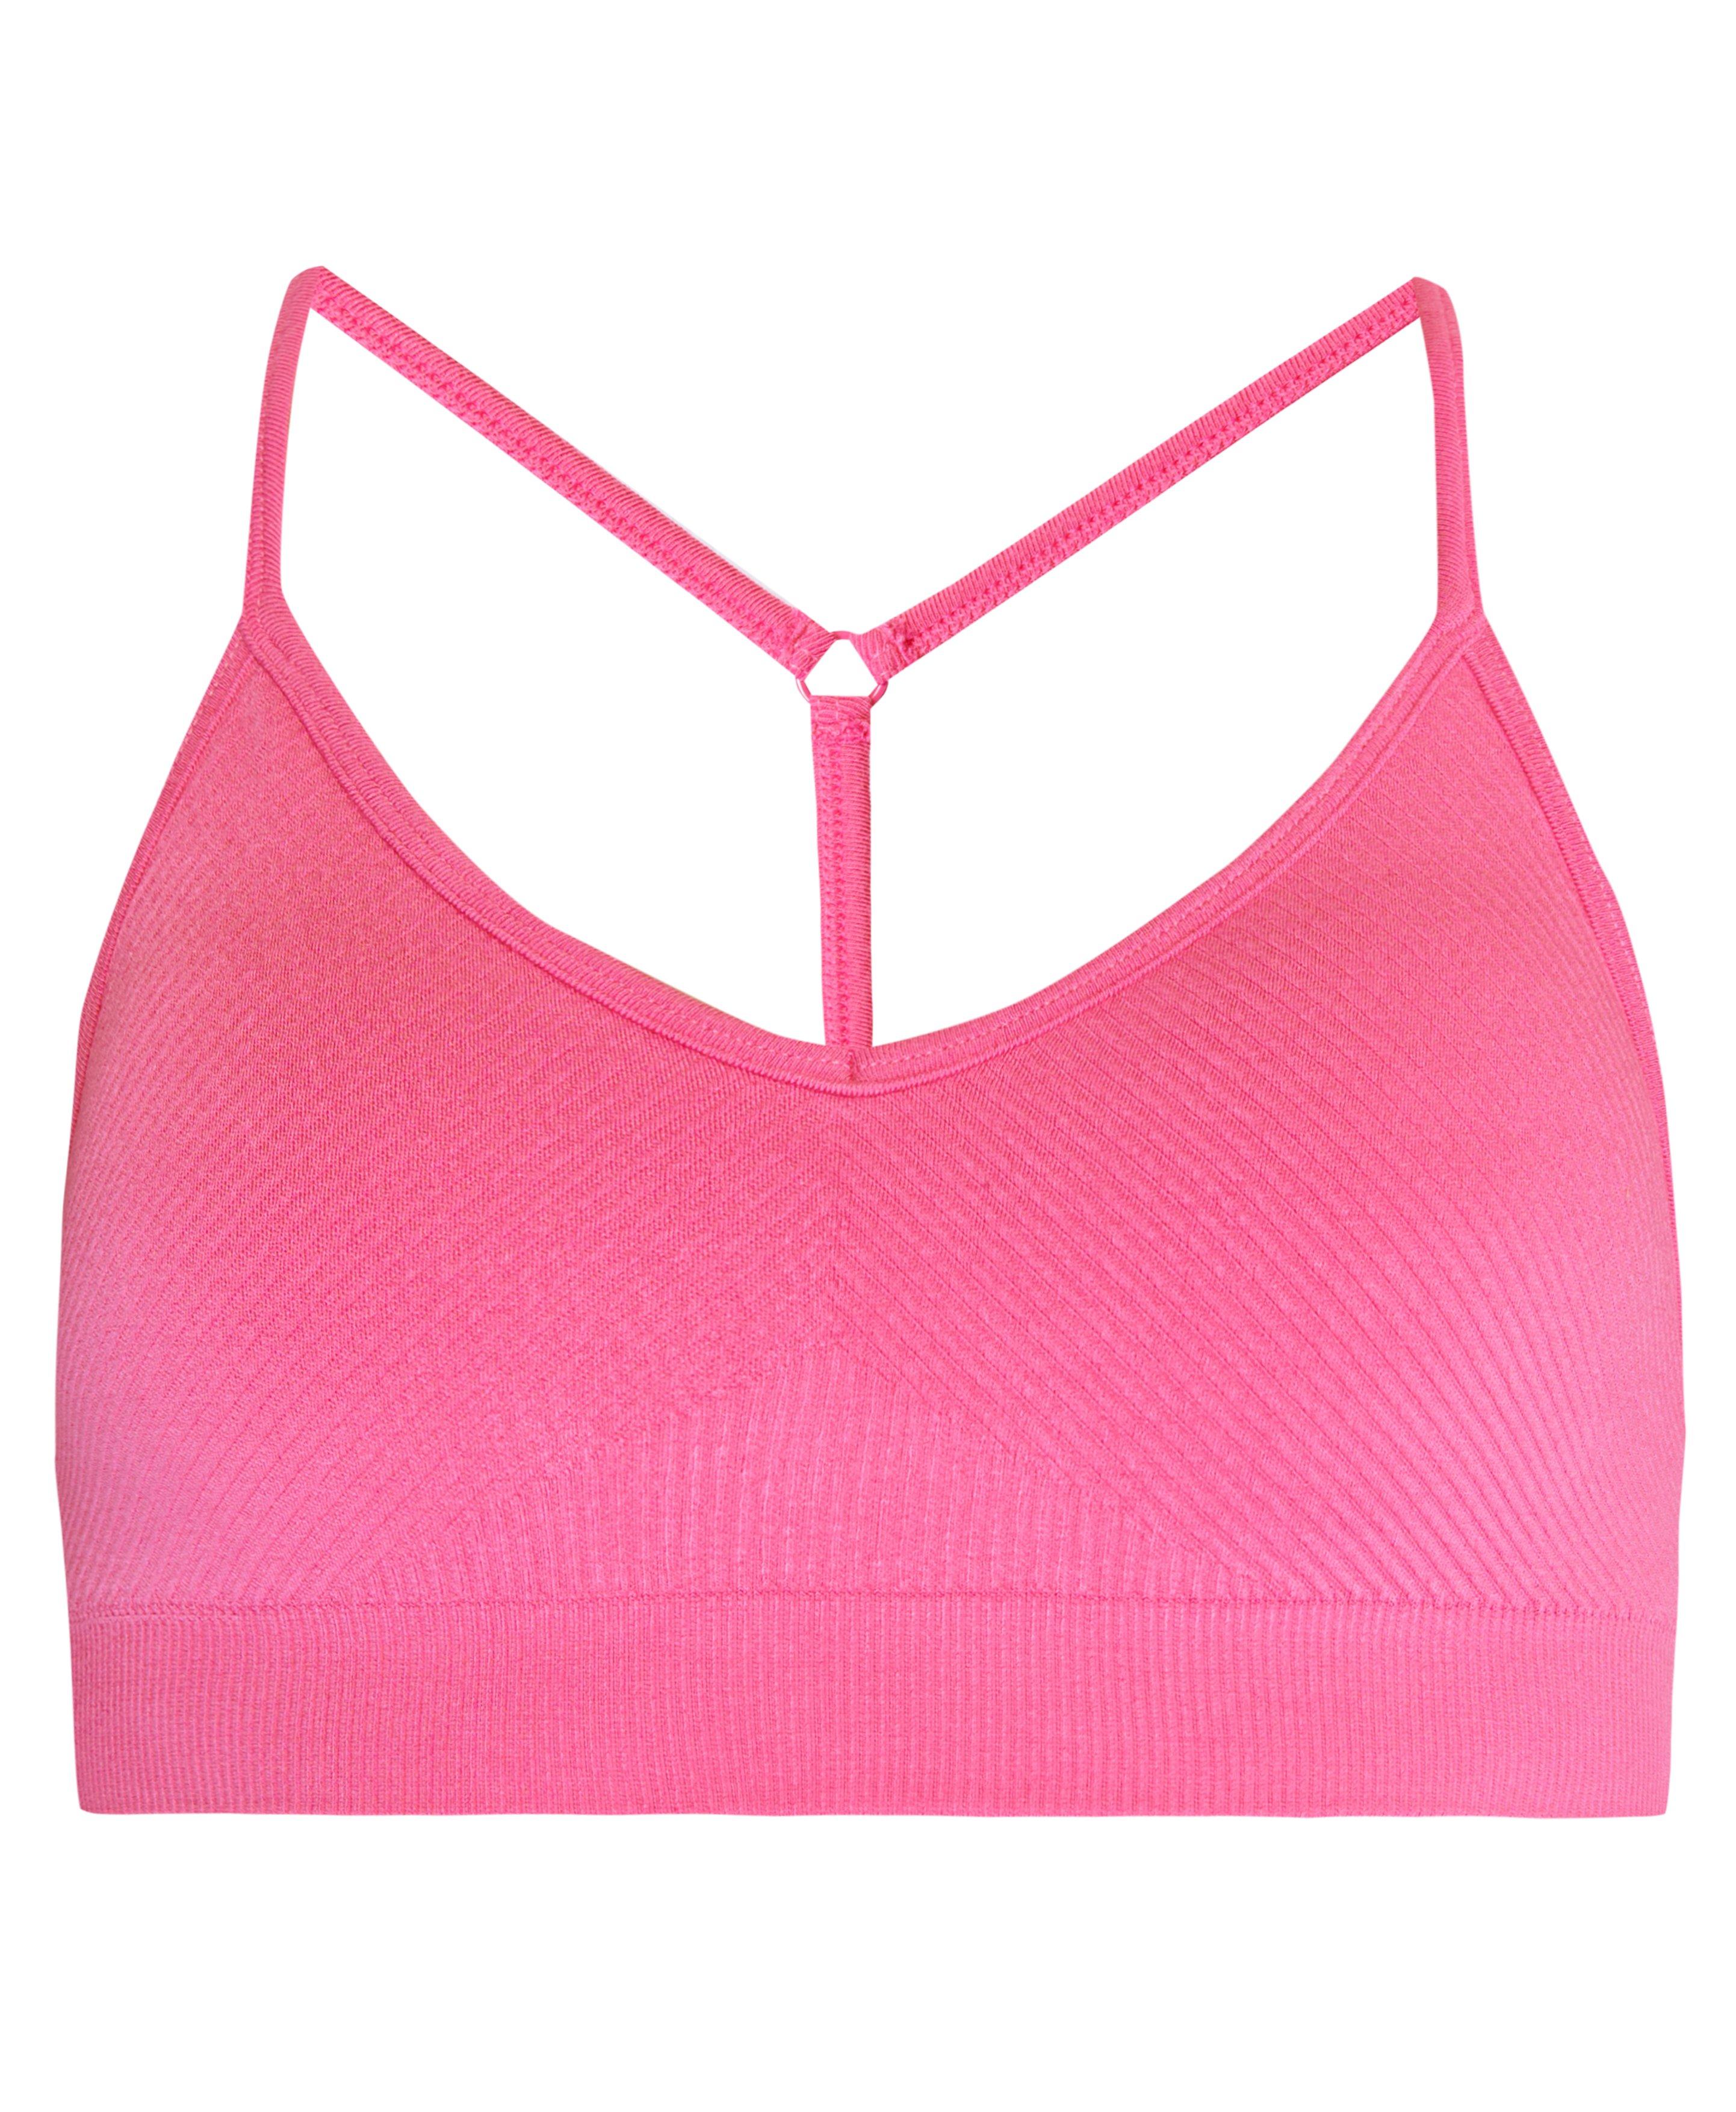 Beyond Yoga Pink Sports Bra Size XL - 59% off